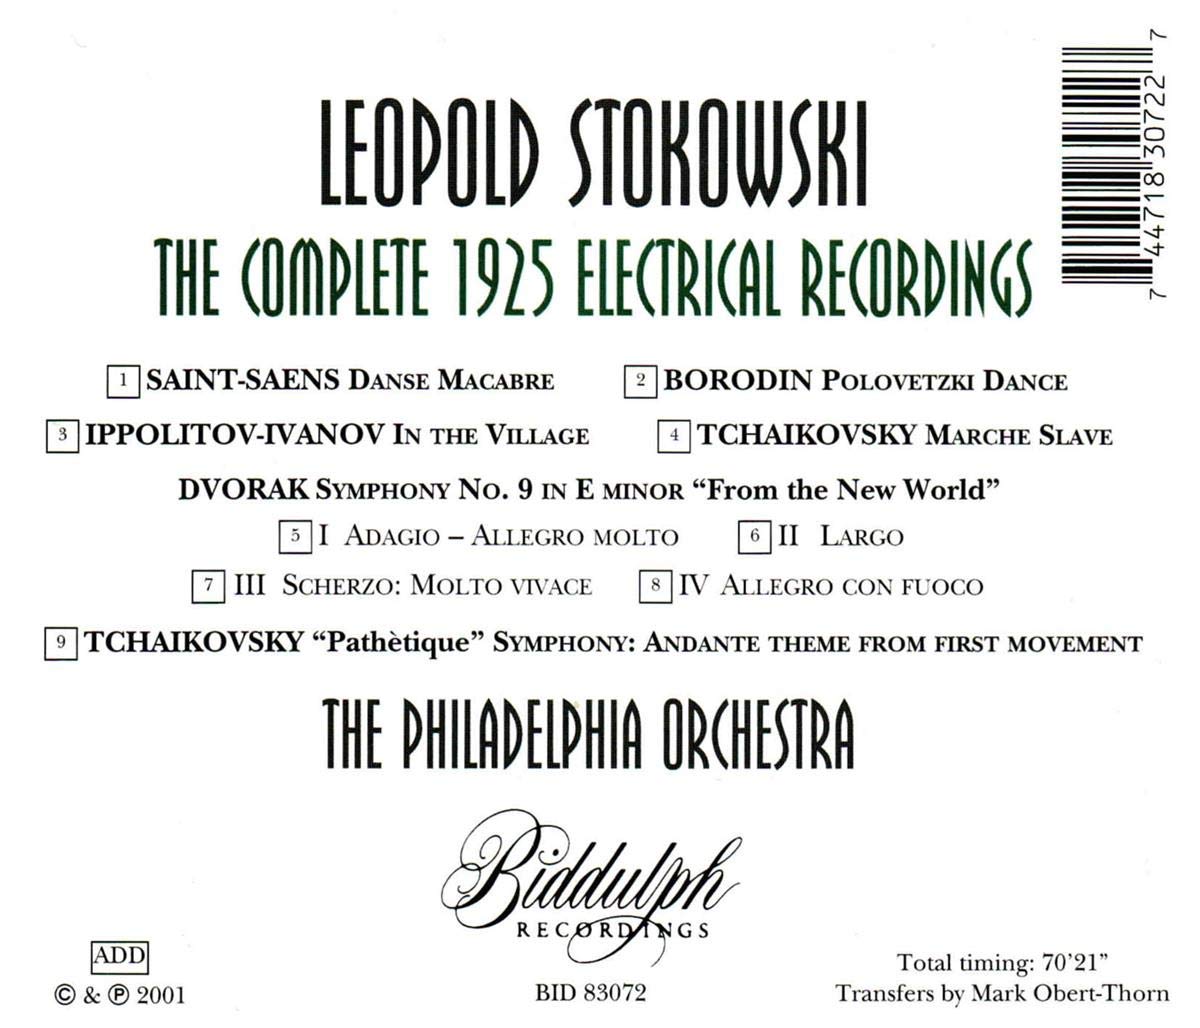 레오폴드 스토코프스키 1925년 녹음 전곡집 (Leopold Stokowski - Complete 1925 Electric Records)